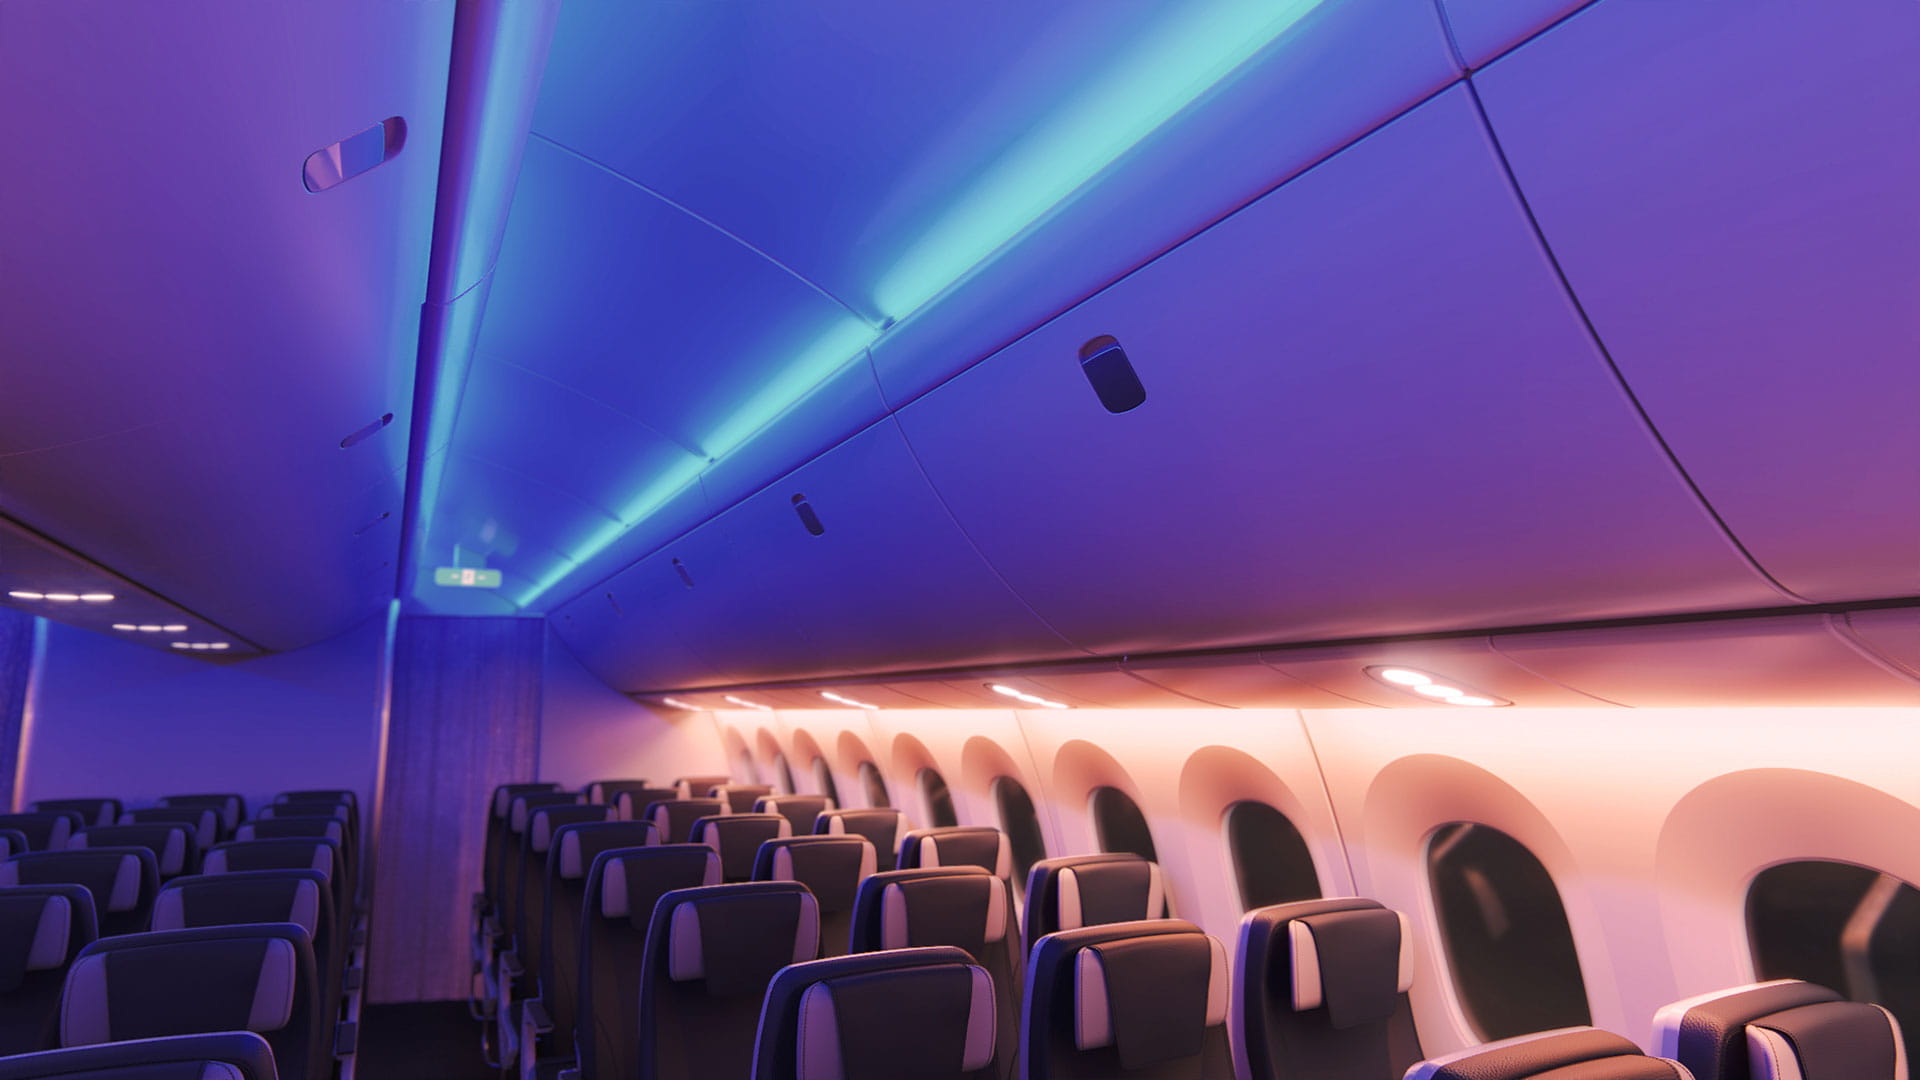 Interior aircraft lighting